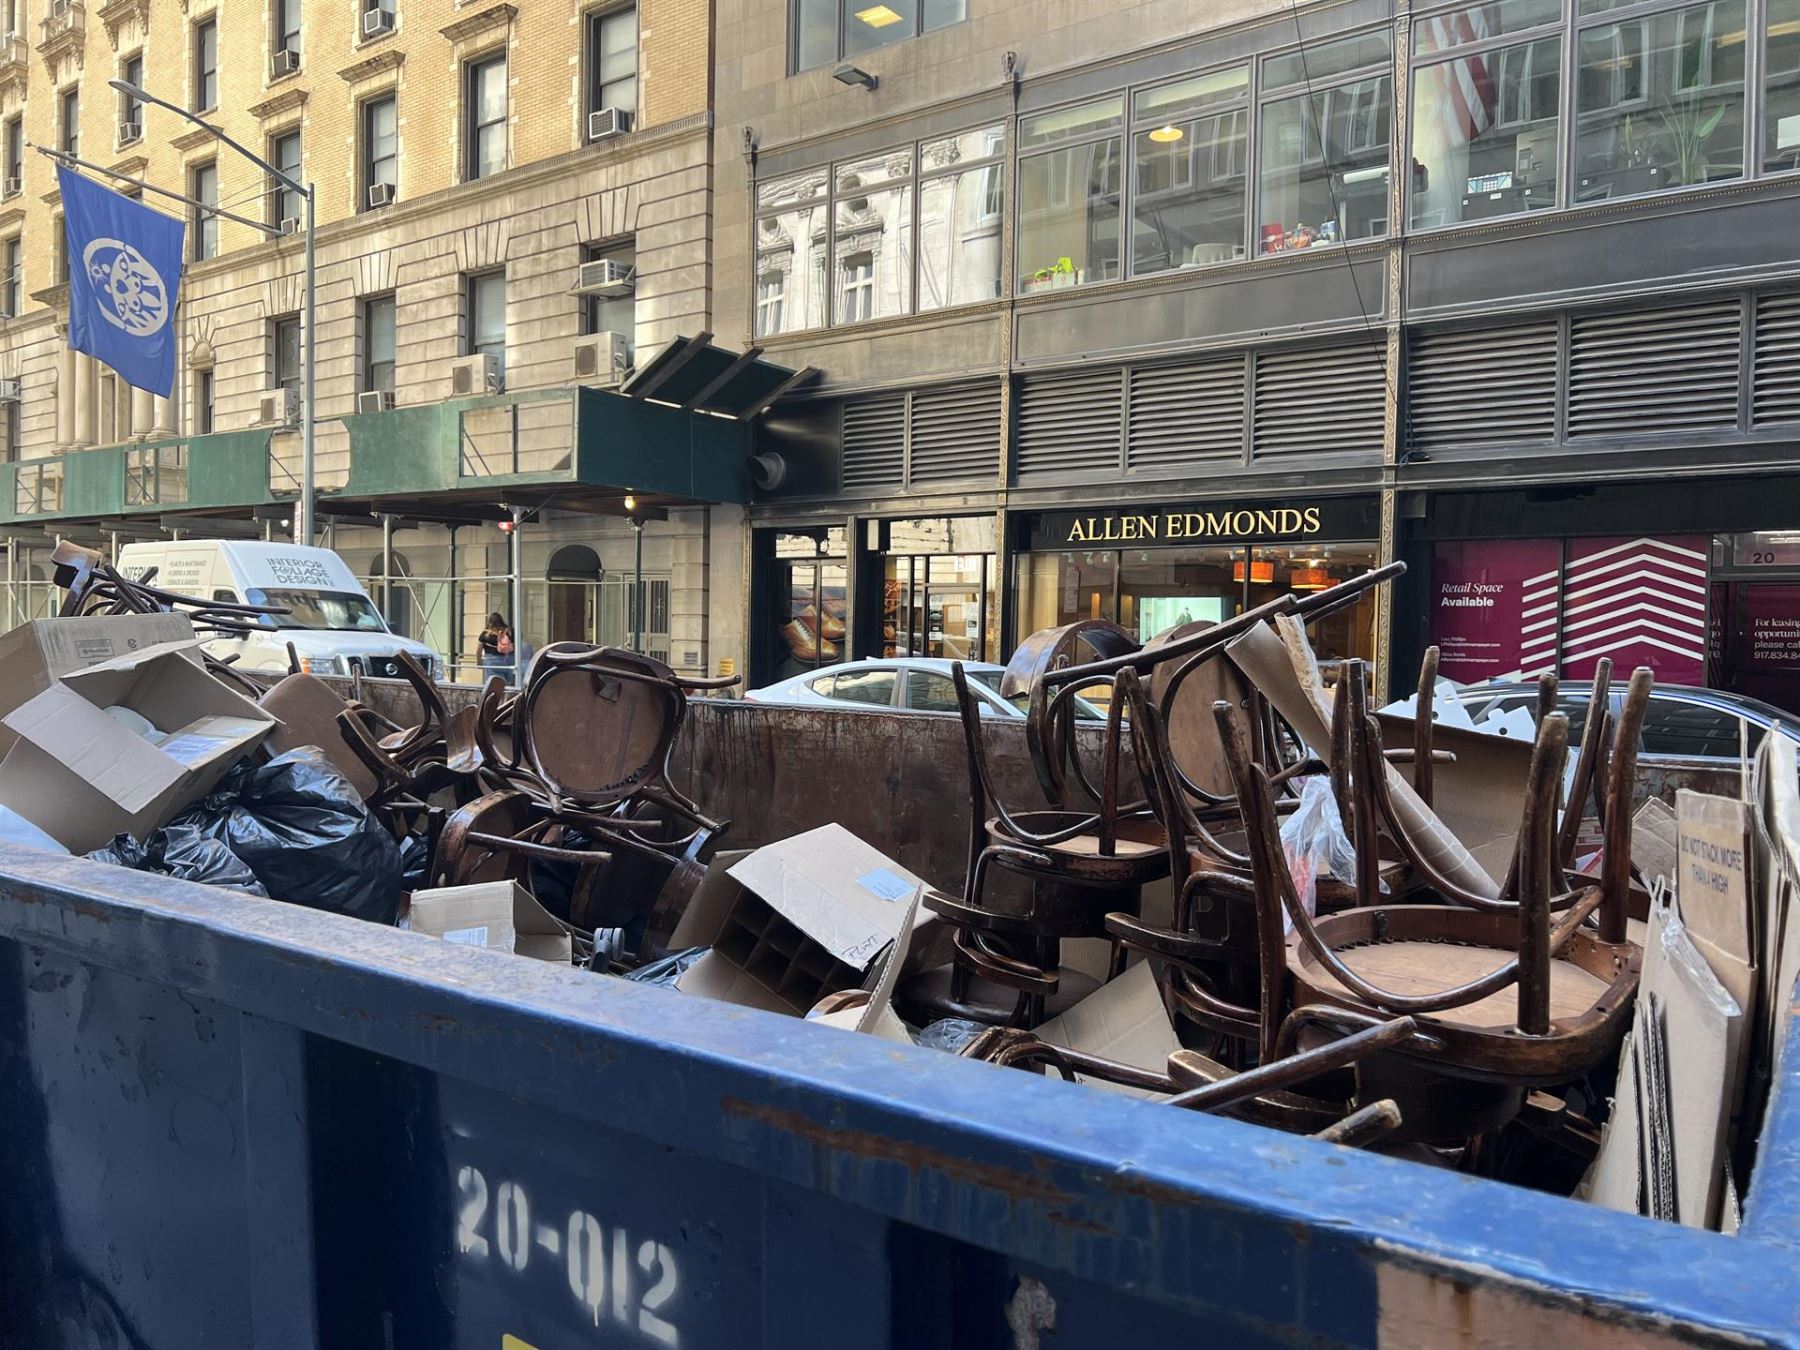 "Stooping" o recoger muebles de la calle, la nueva moda en Nueva York